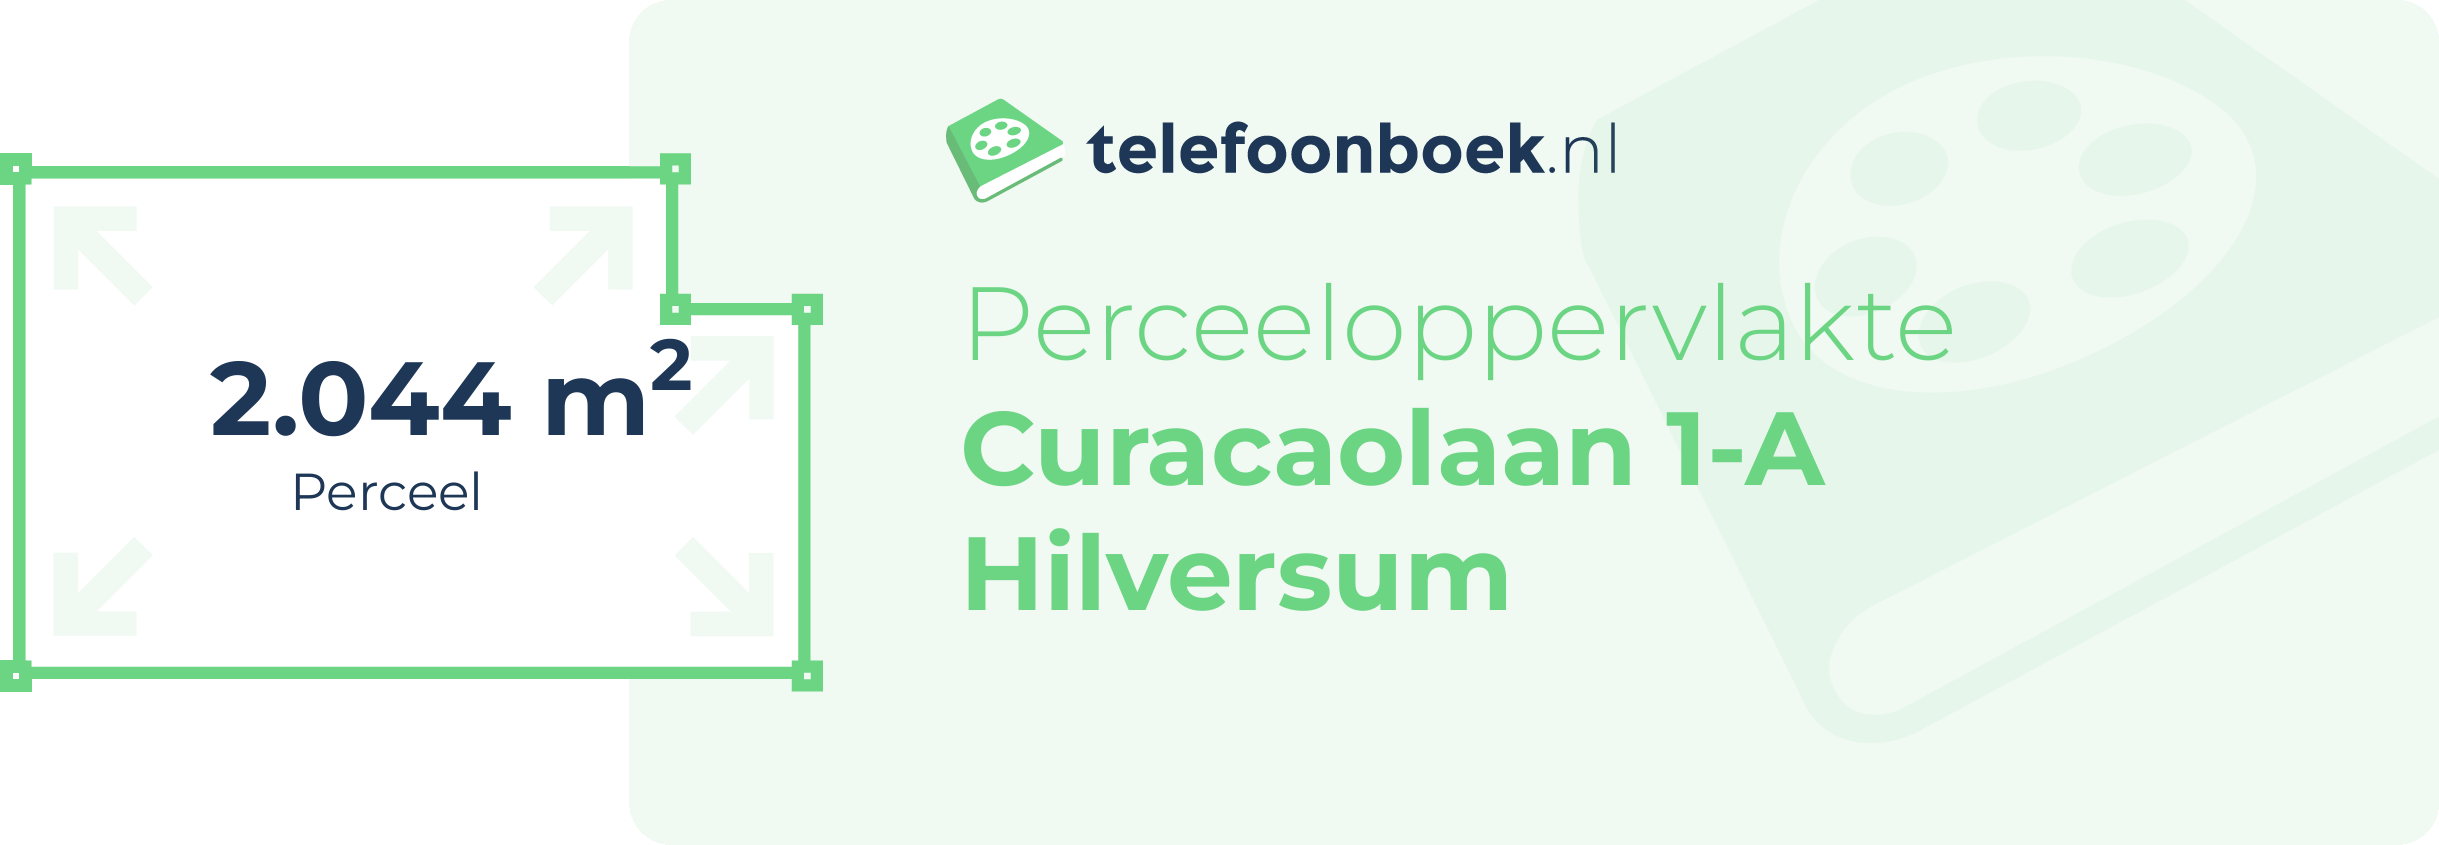 Perceeloppervlakte Curacaolaan 1-A Hilversum